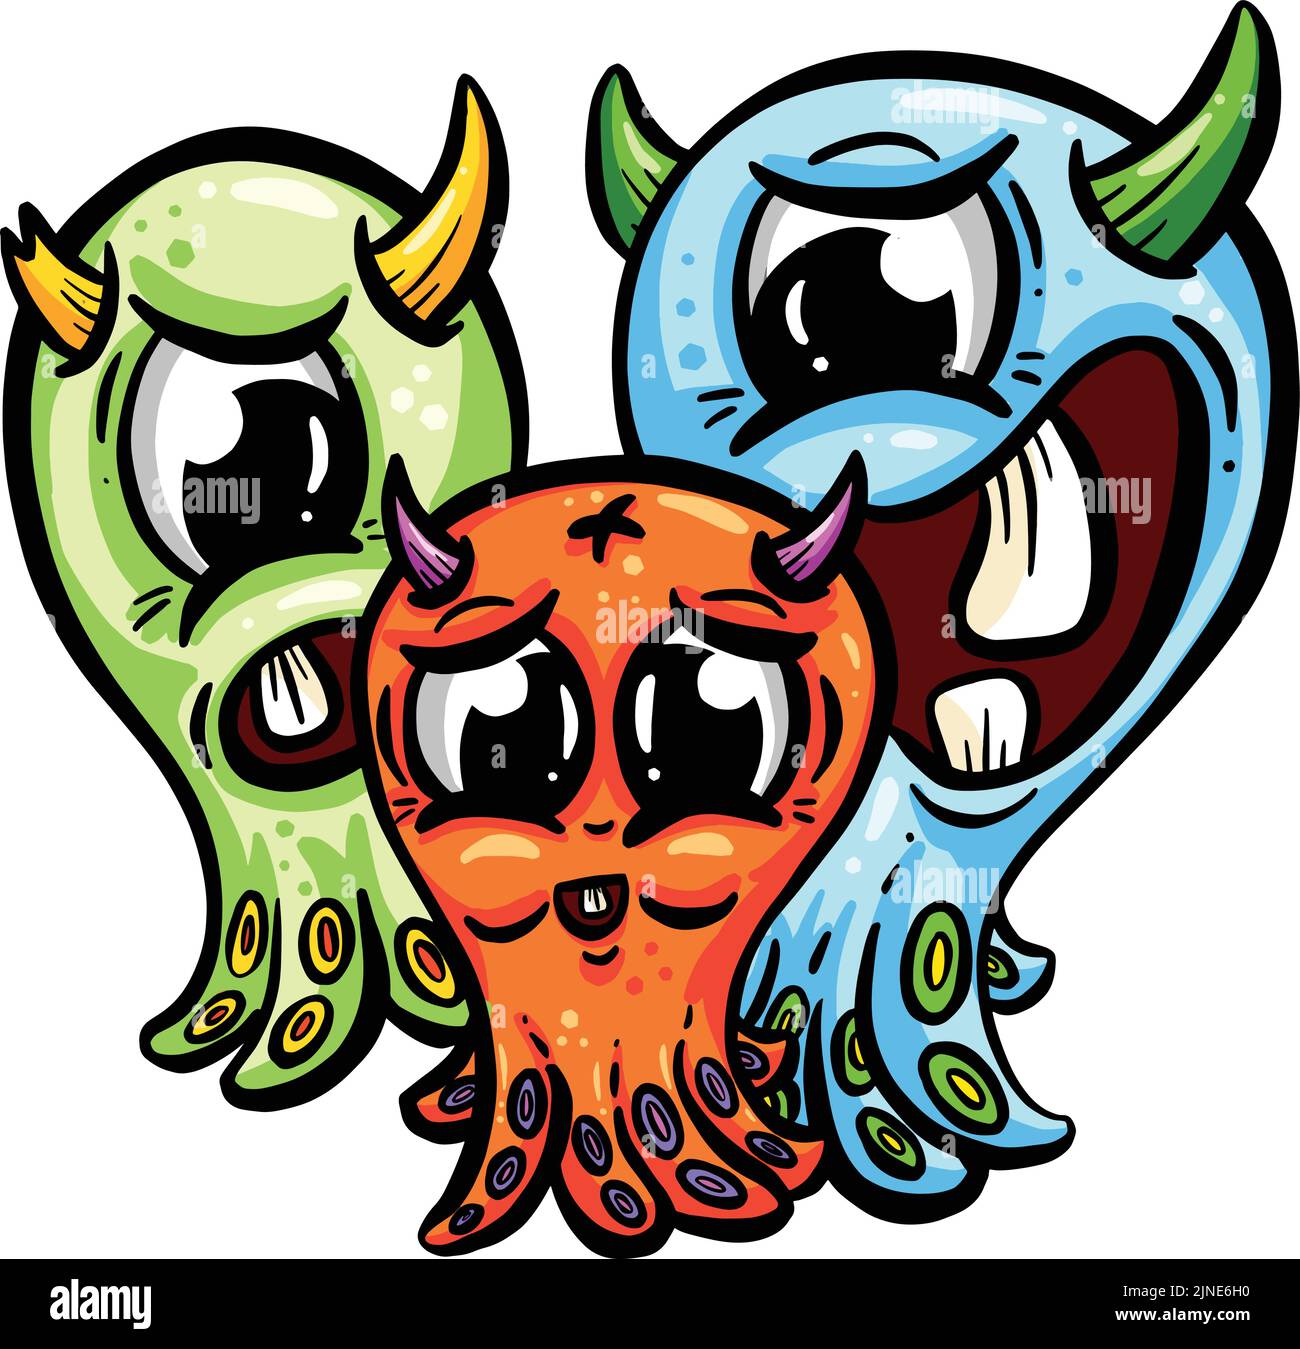 Cute Weird Alien Monster Cartoon Characters as Mascots or Logo Design Stock Vector